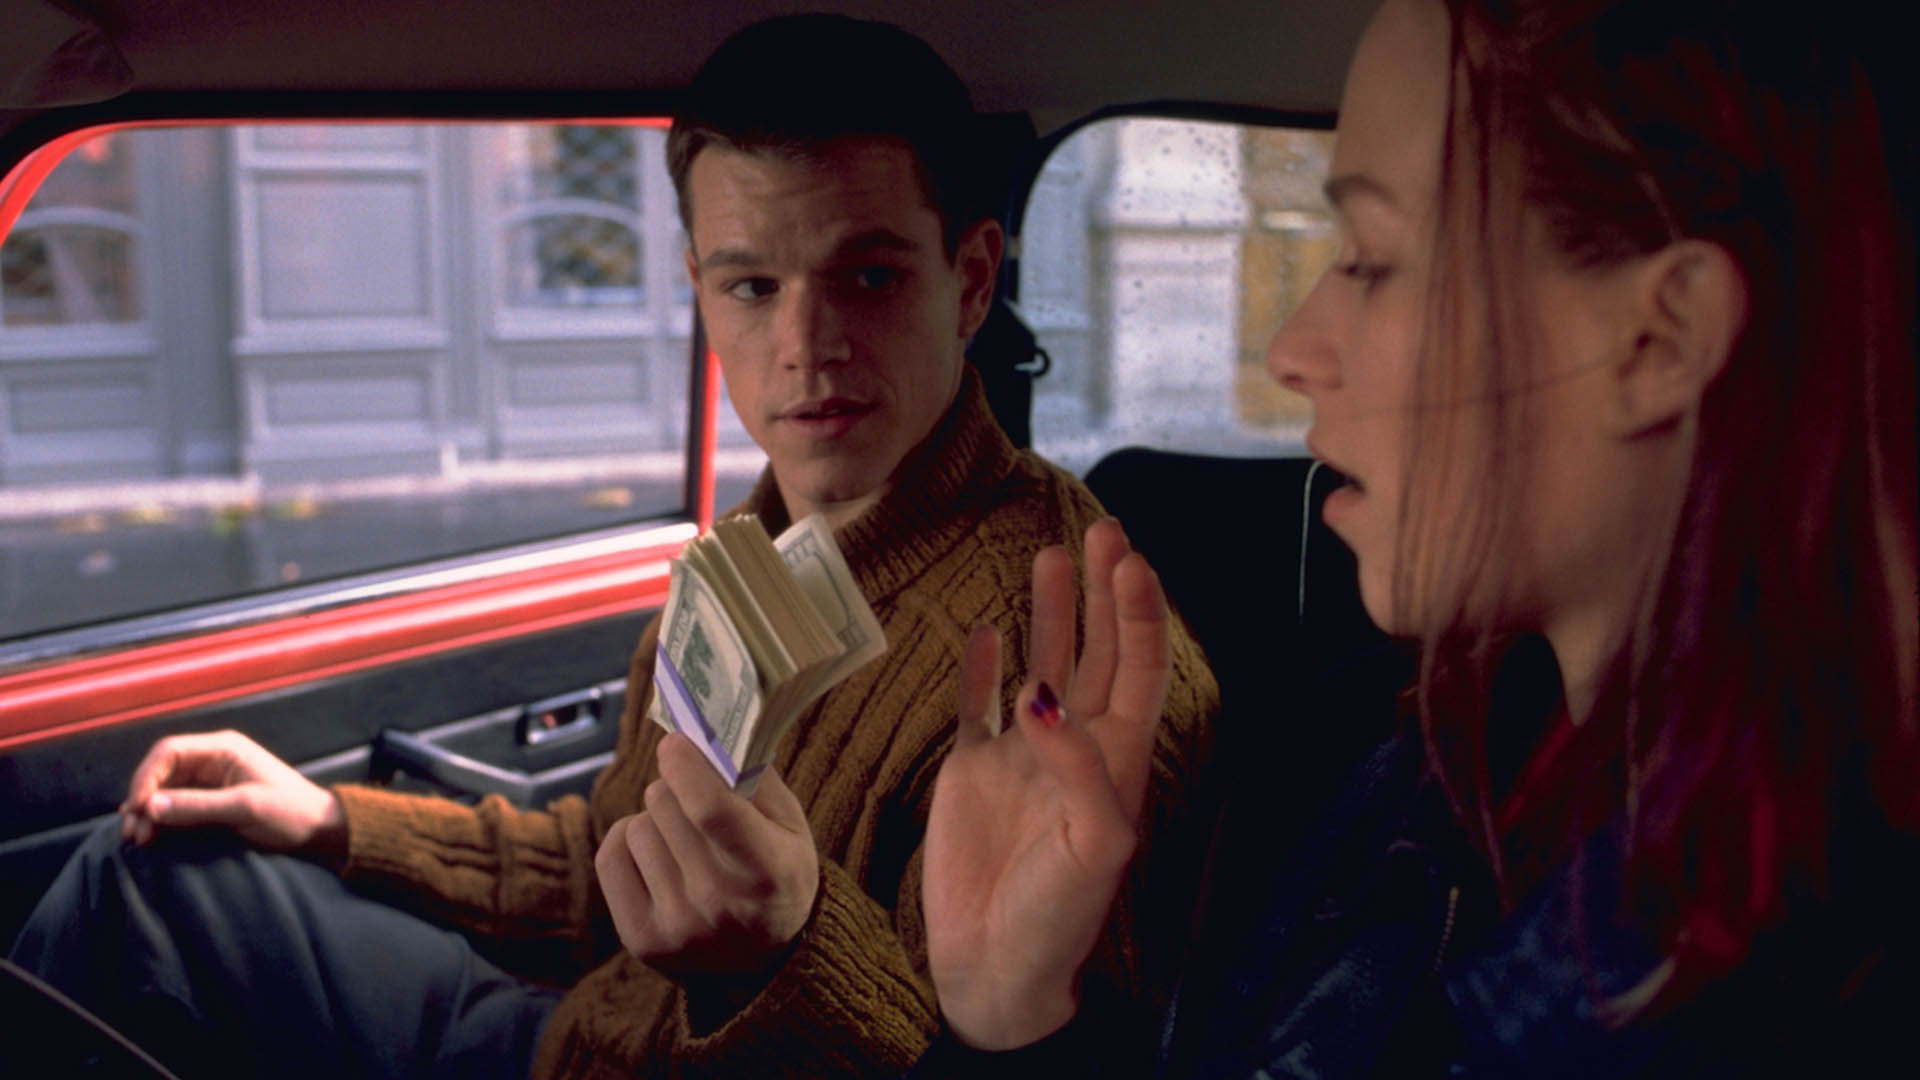 مت دیمون در حال پول دادن به فرانکا پوتنته در فیلم The Bourne Identity